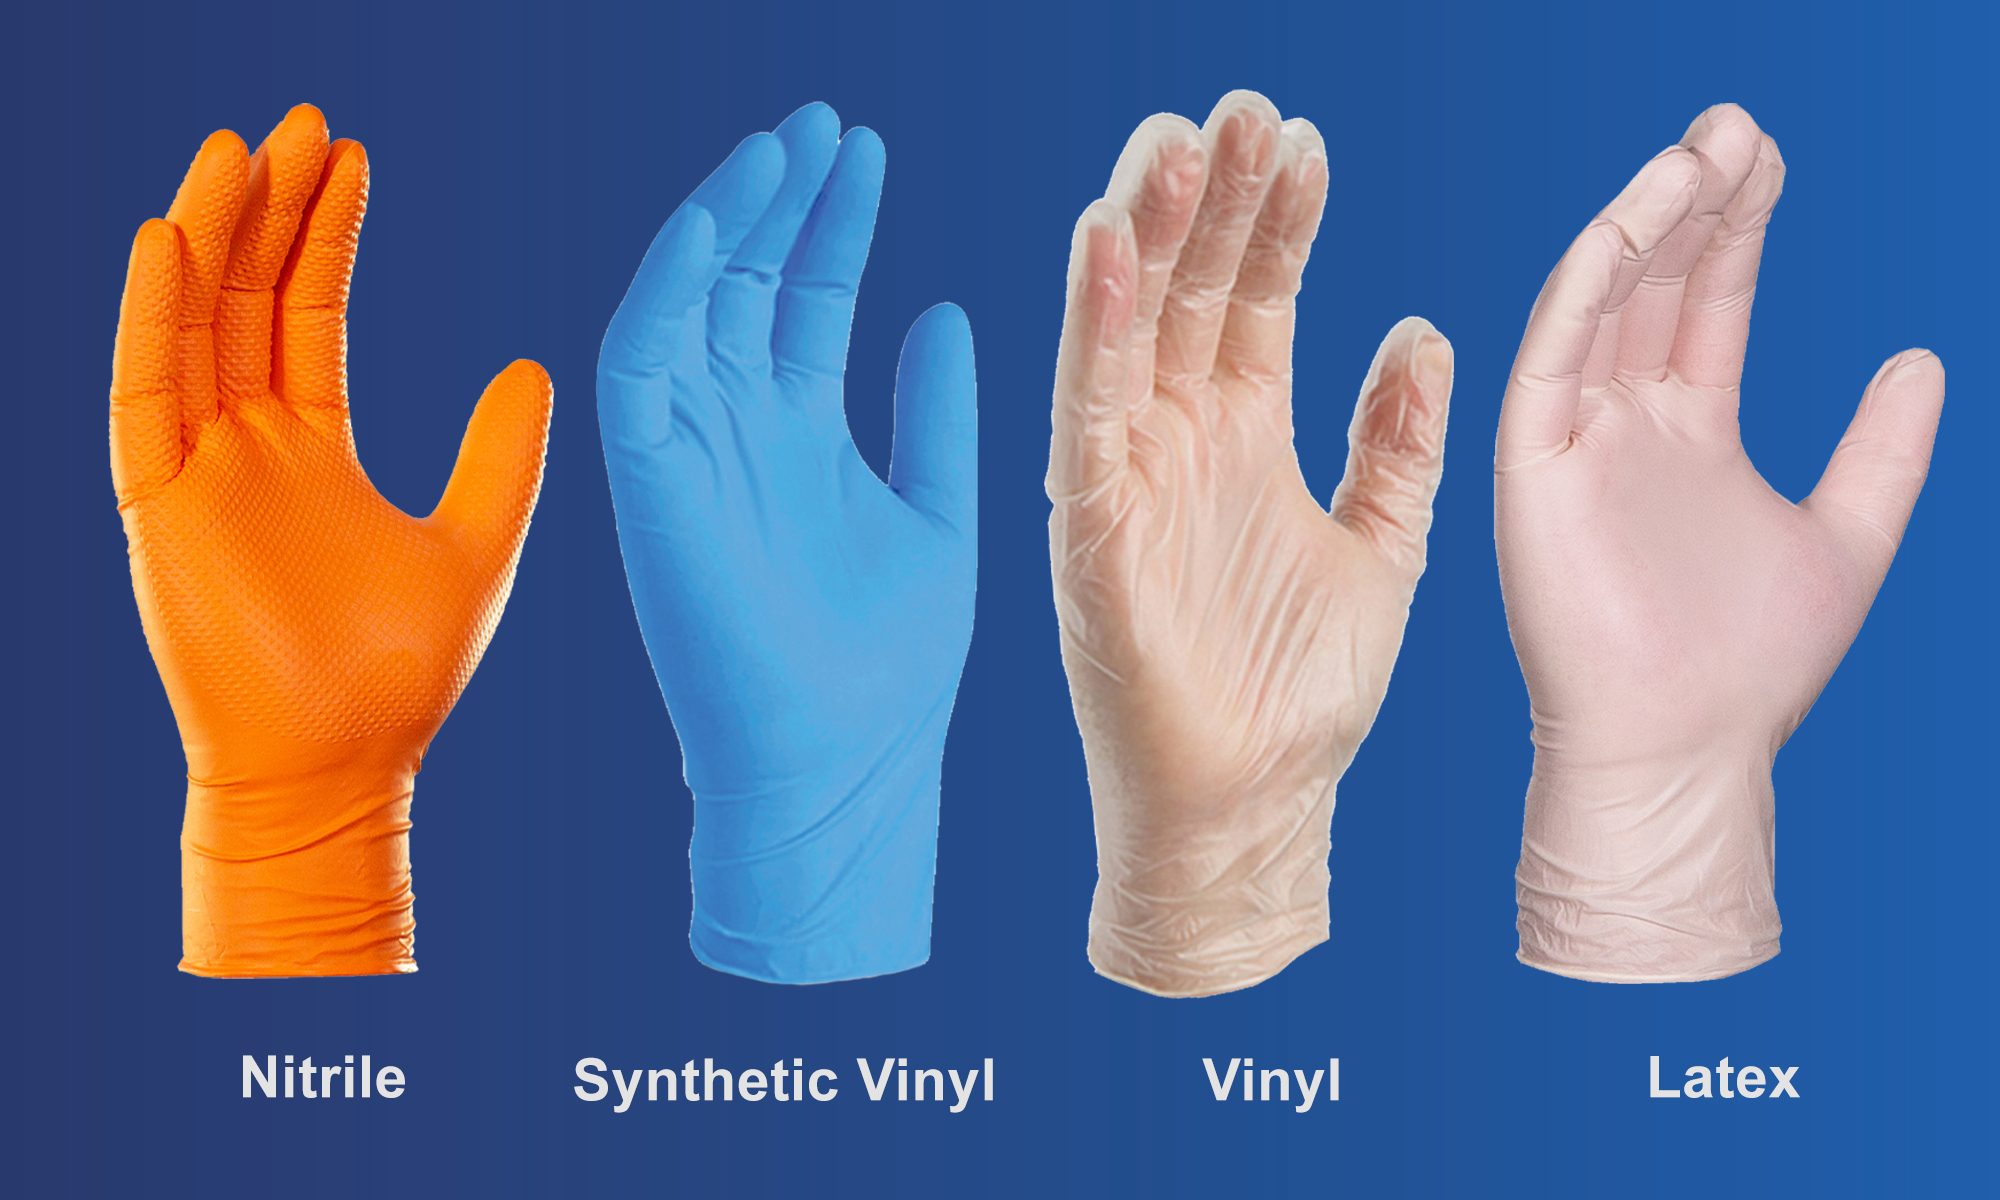 Găng tay phẫu thuật được làm từ Vinyl khi so với các chất liệu khác